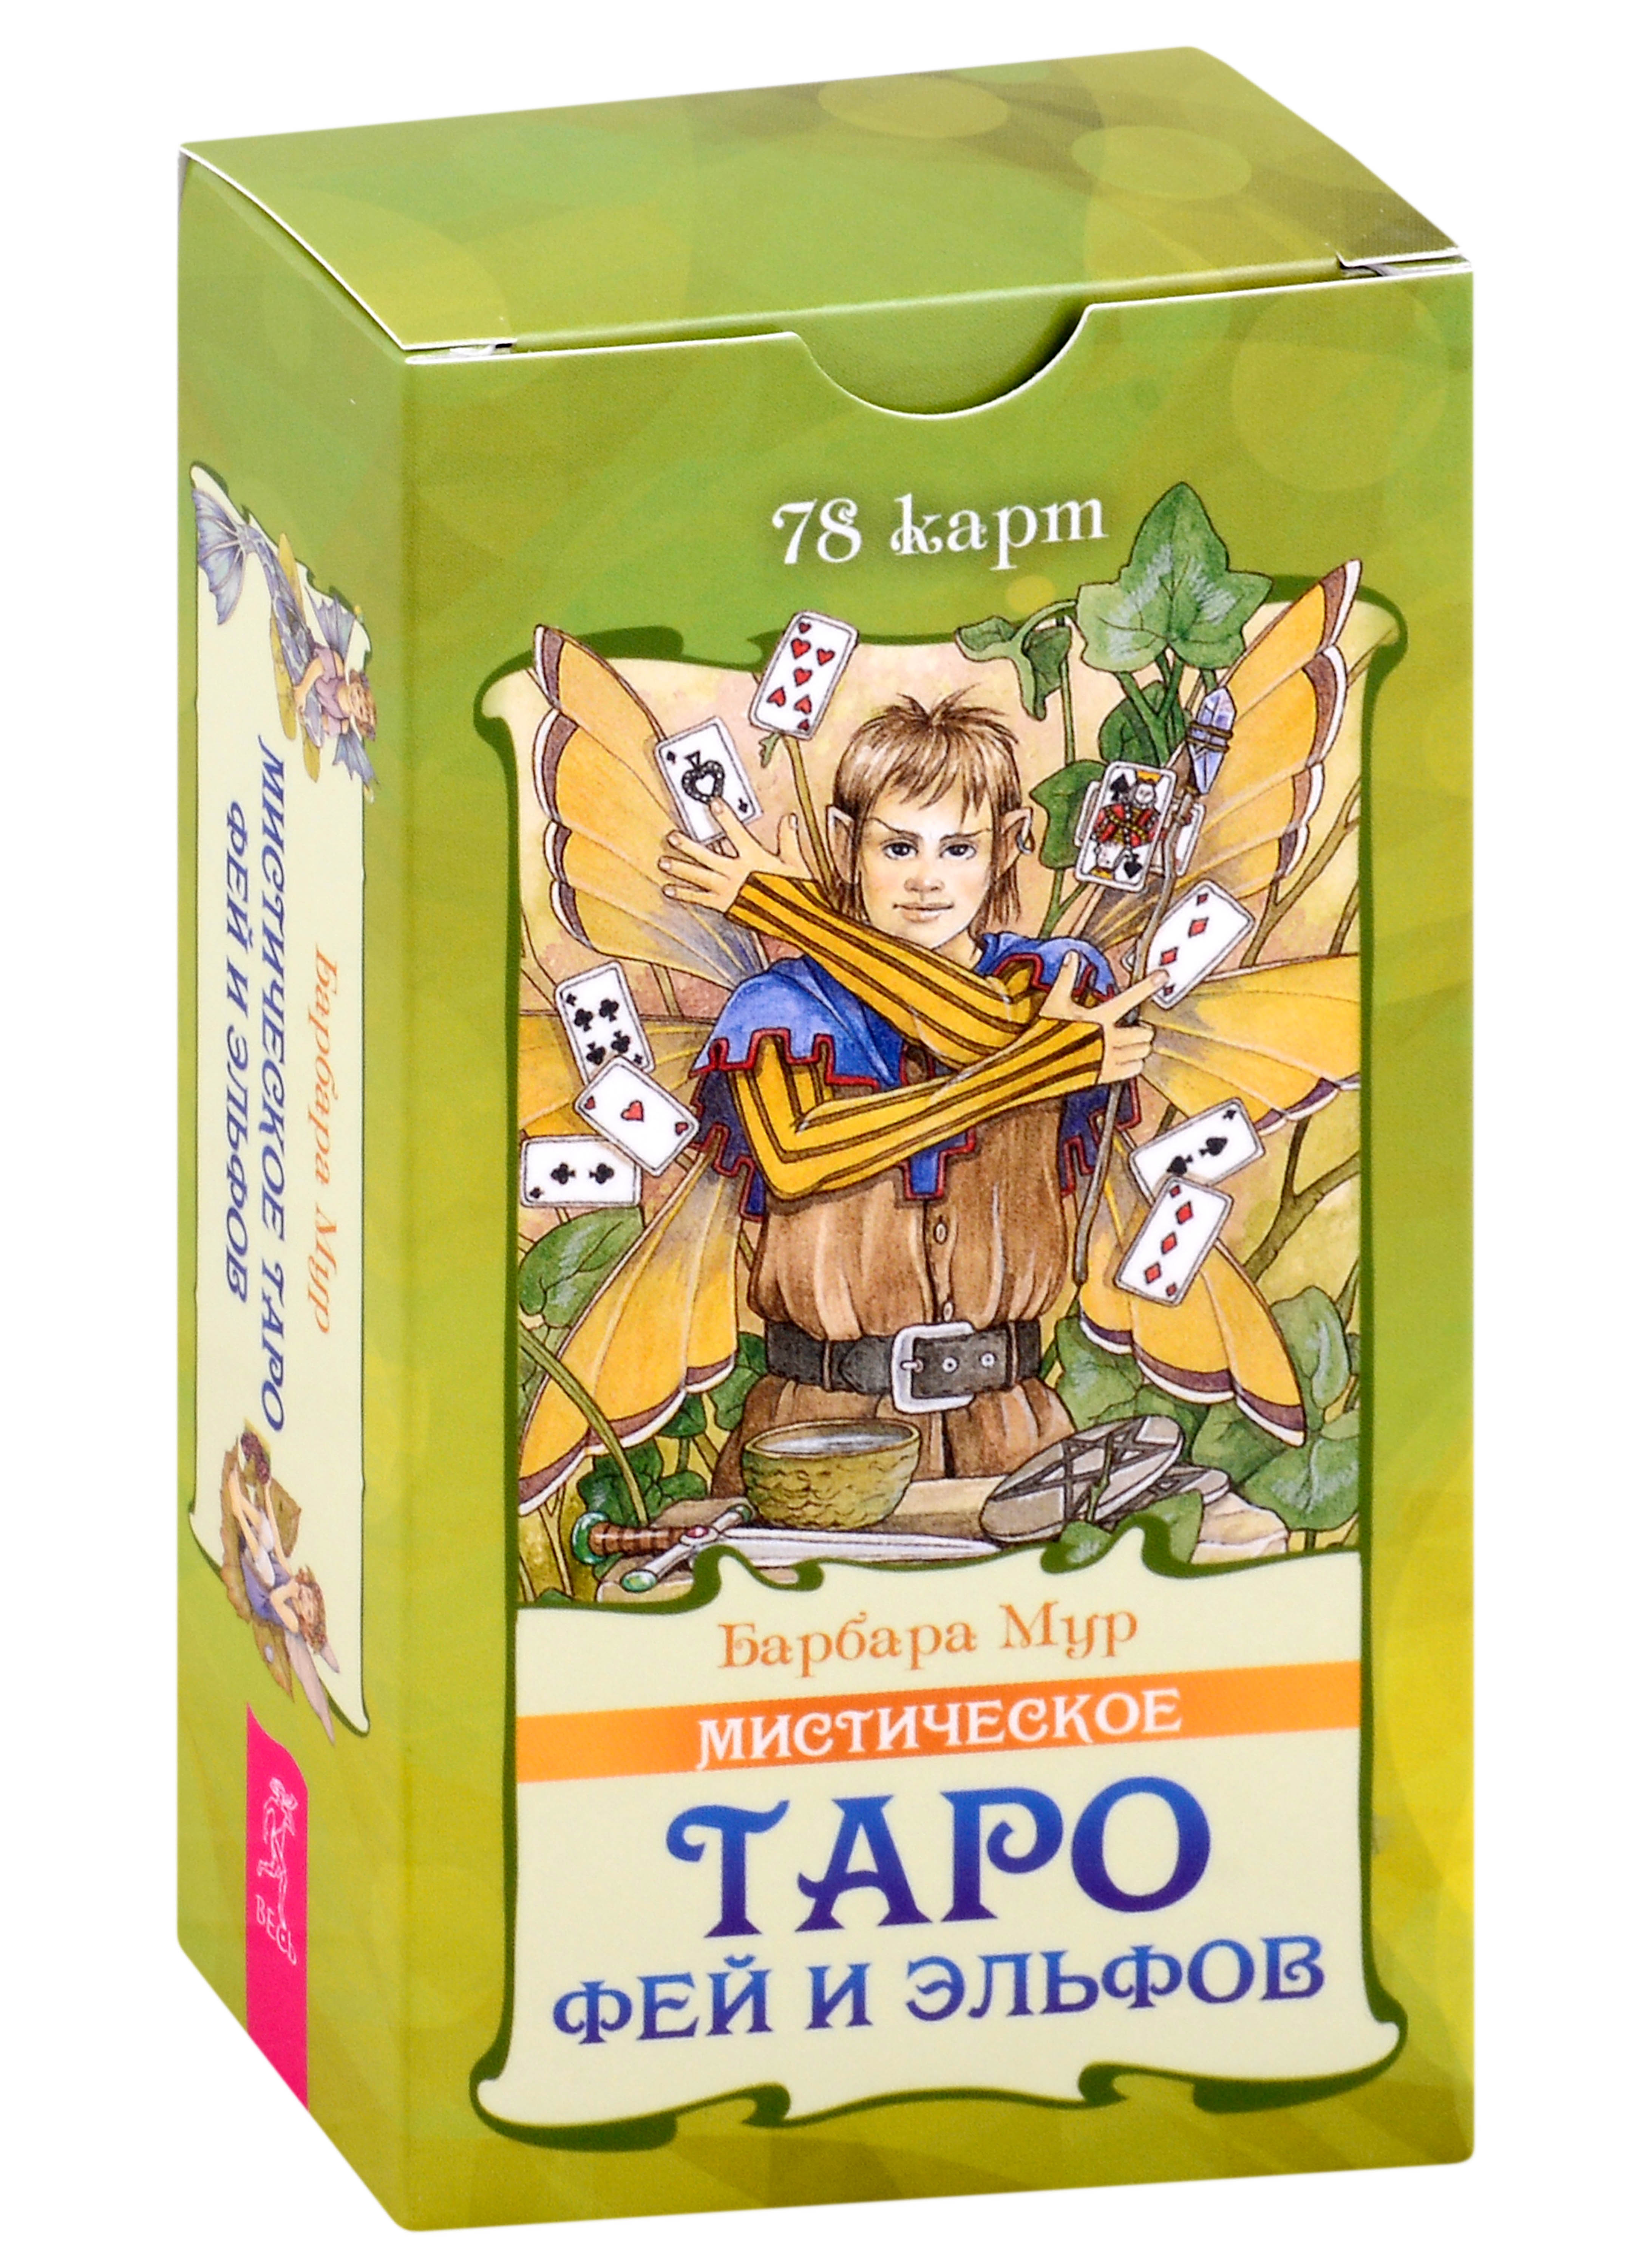 мур барбара мистическое таро фей и эльфов 78 карт Мистическое Таро фей и эльфов (78 карт) (5015)